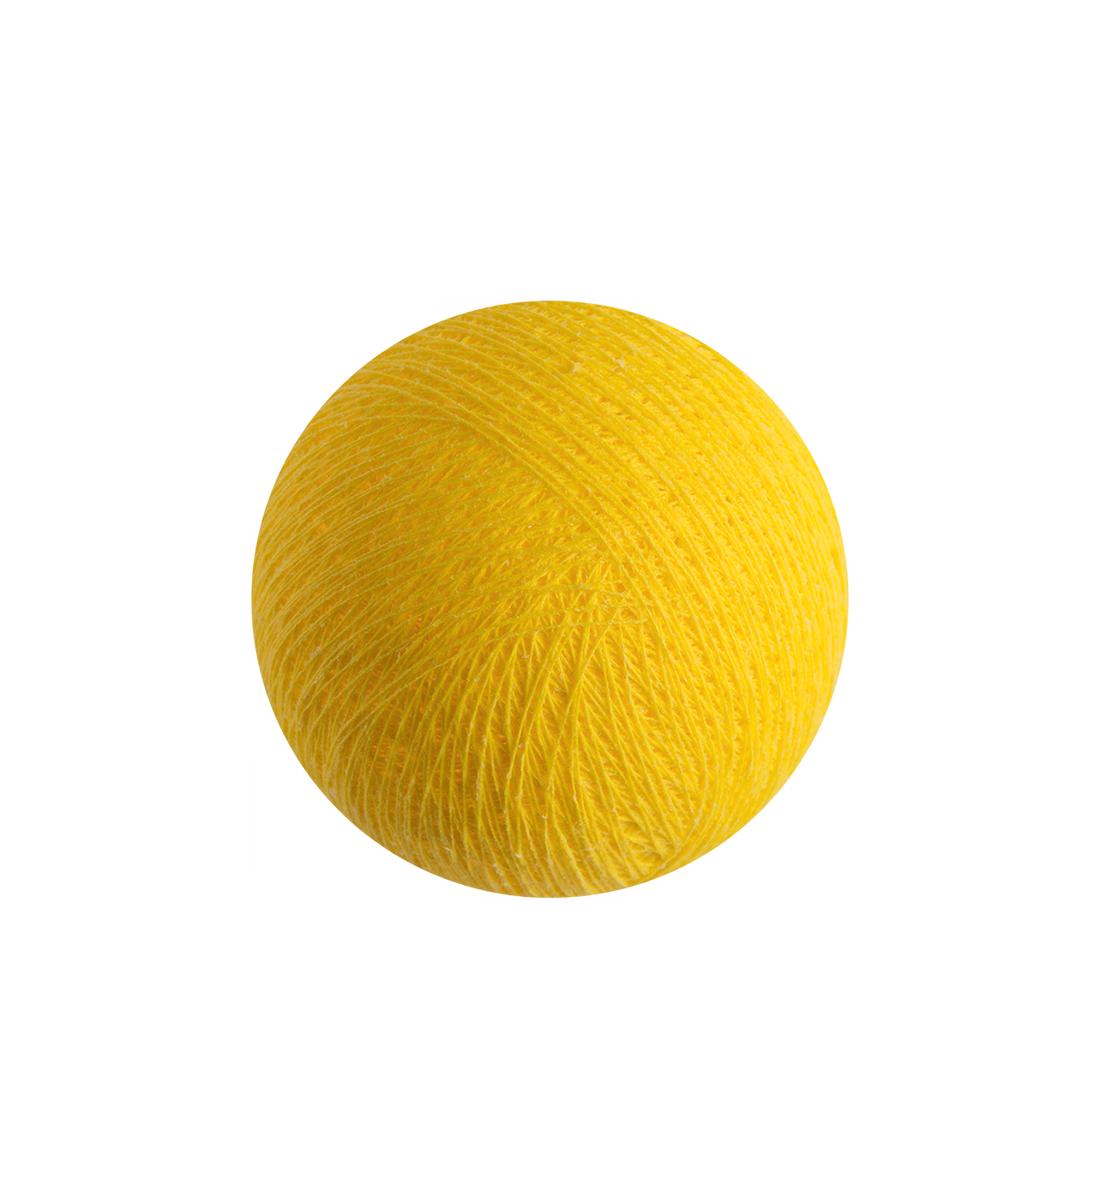 yellow - Premium balls - La Case de Cousin Paul